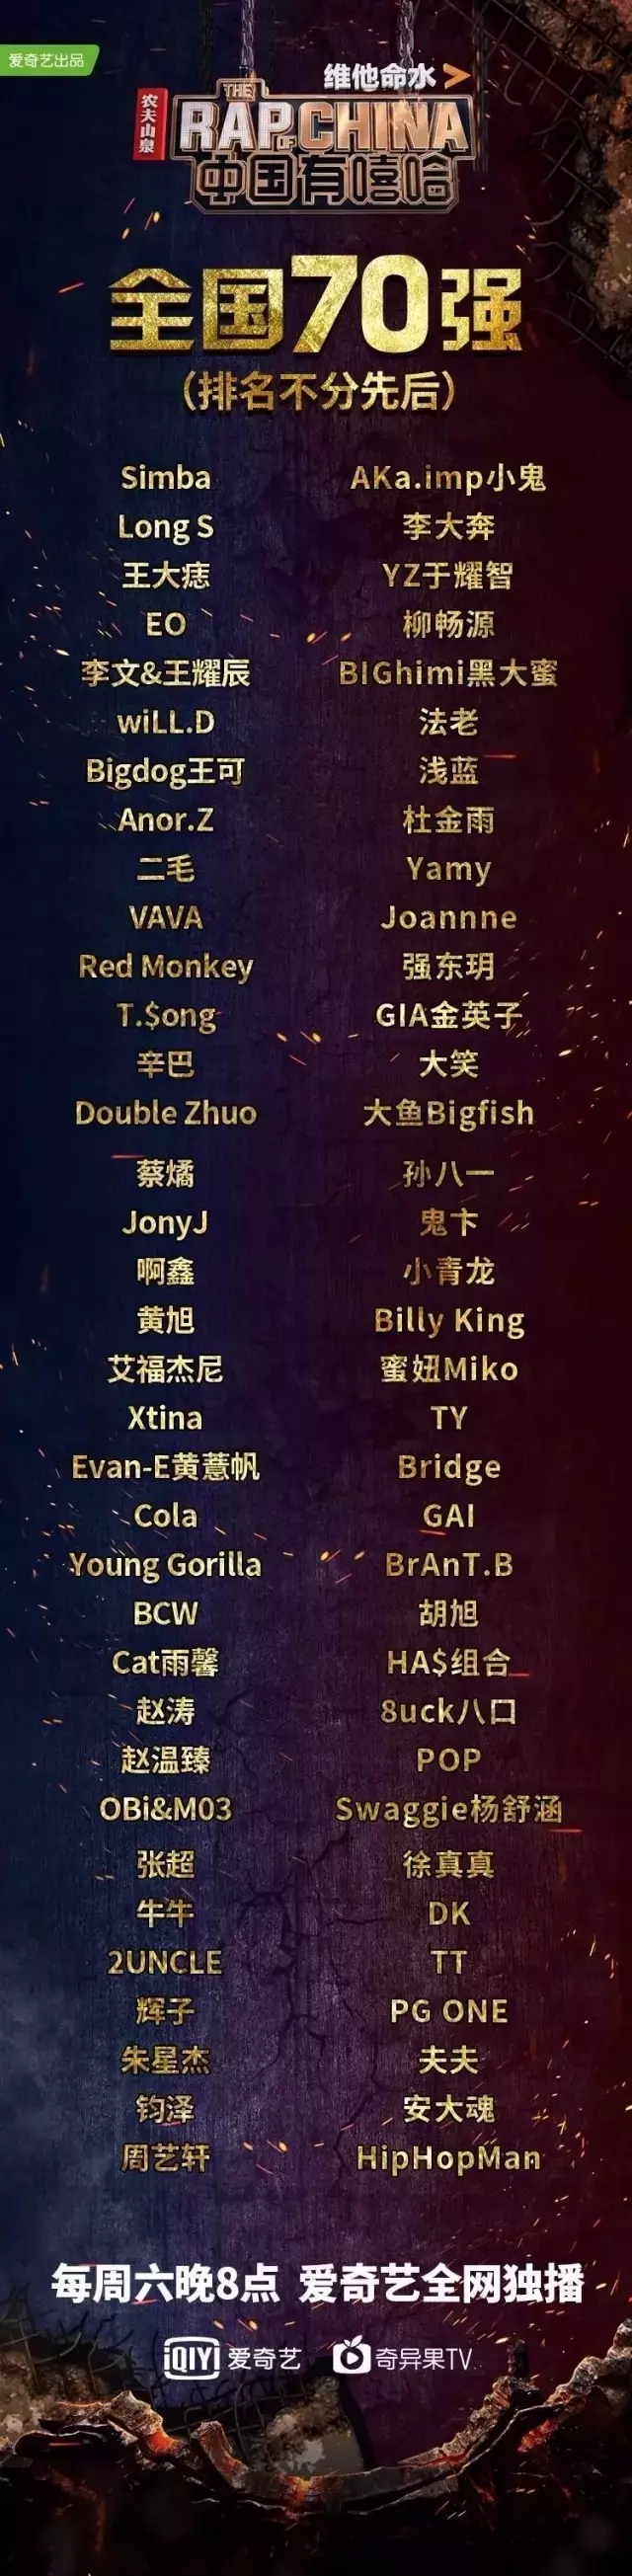 中国摇滚歌手名单图片